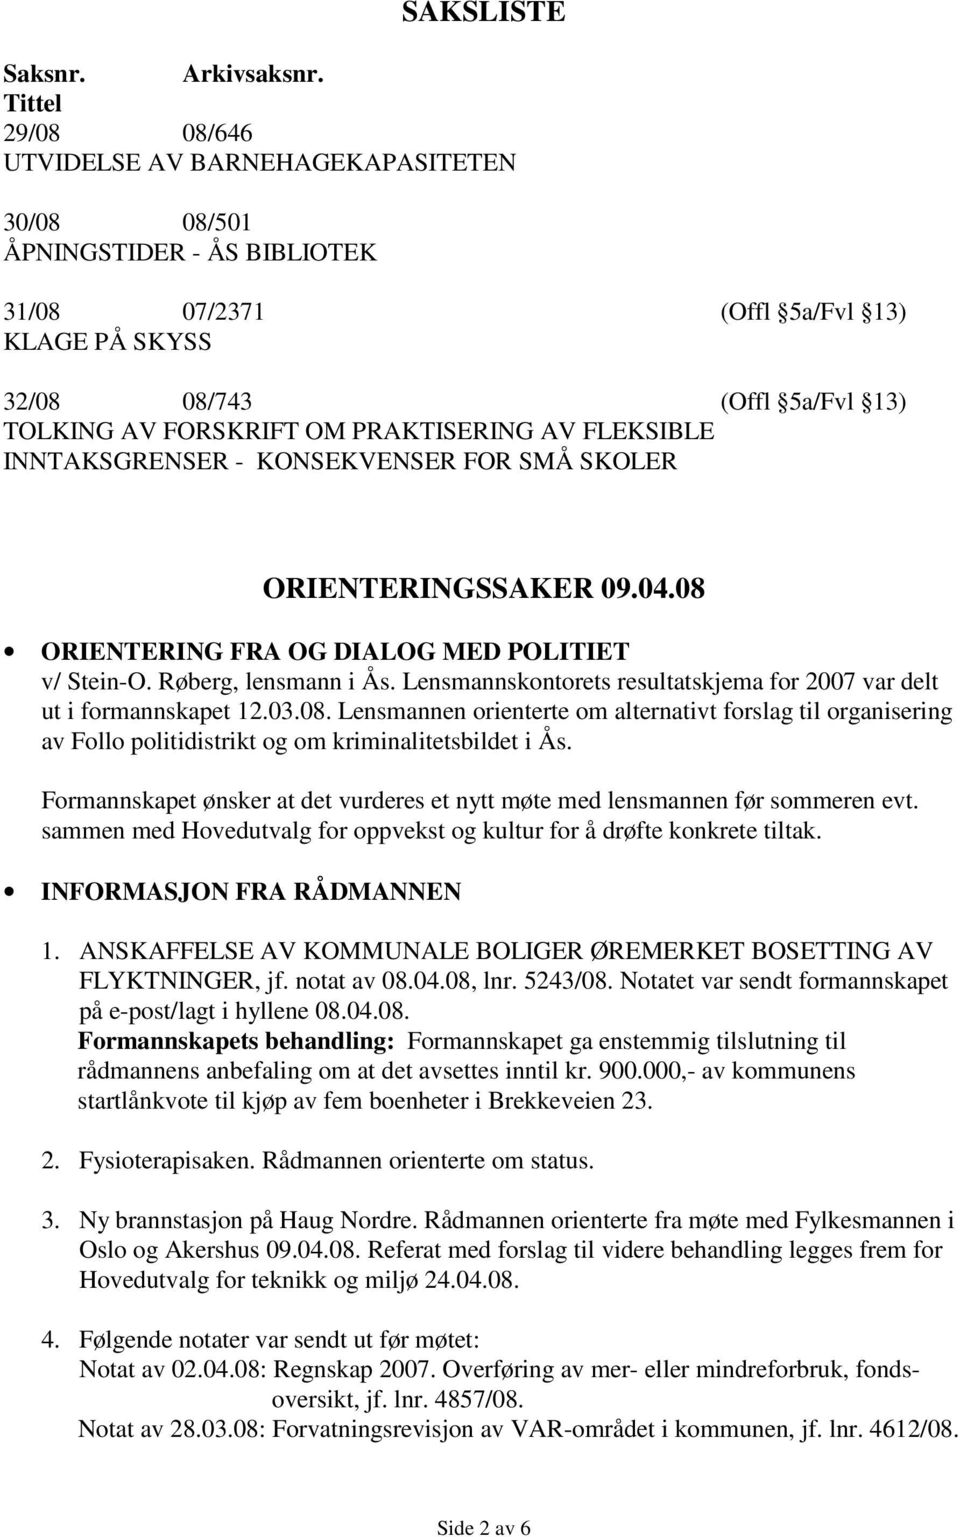 PRAKTISERING AV FLEKSIBLE INNTAKSGRENSER - KONSEKVENSER FOR SMÅ SKOLER ORIENTERINGSSAKER 09.04.08 ORIENTERING FRA OG DIALOG MED POLITIET v/ Stein-O. Røberg, lensmann i Ås.